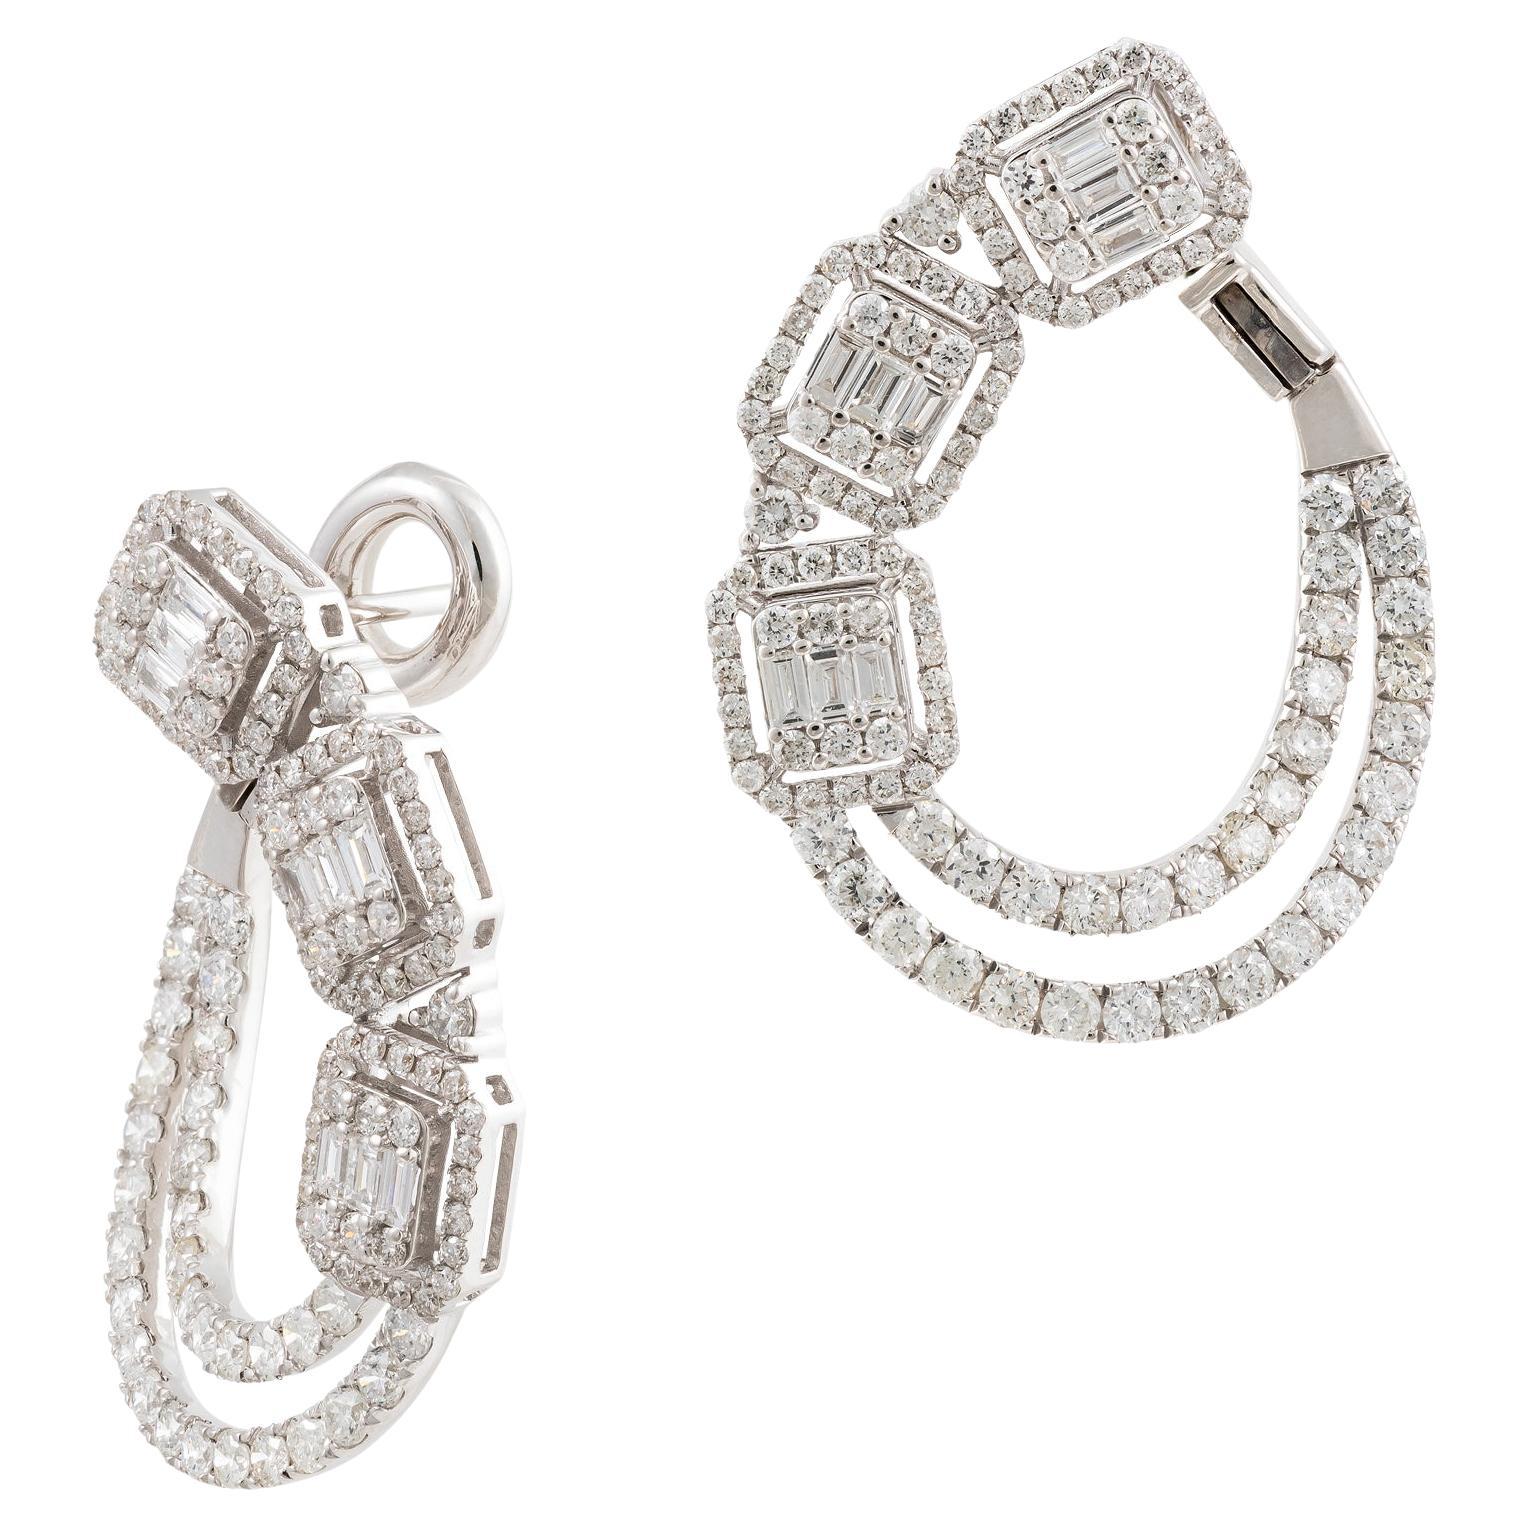 11, 500 Exquisite 18KT Gold Magnificent Triple Baguette Diamond Twist Earrings For Sale